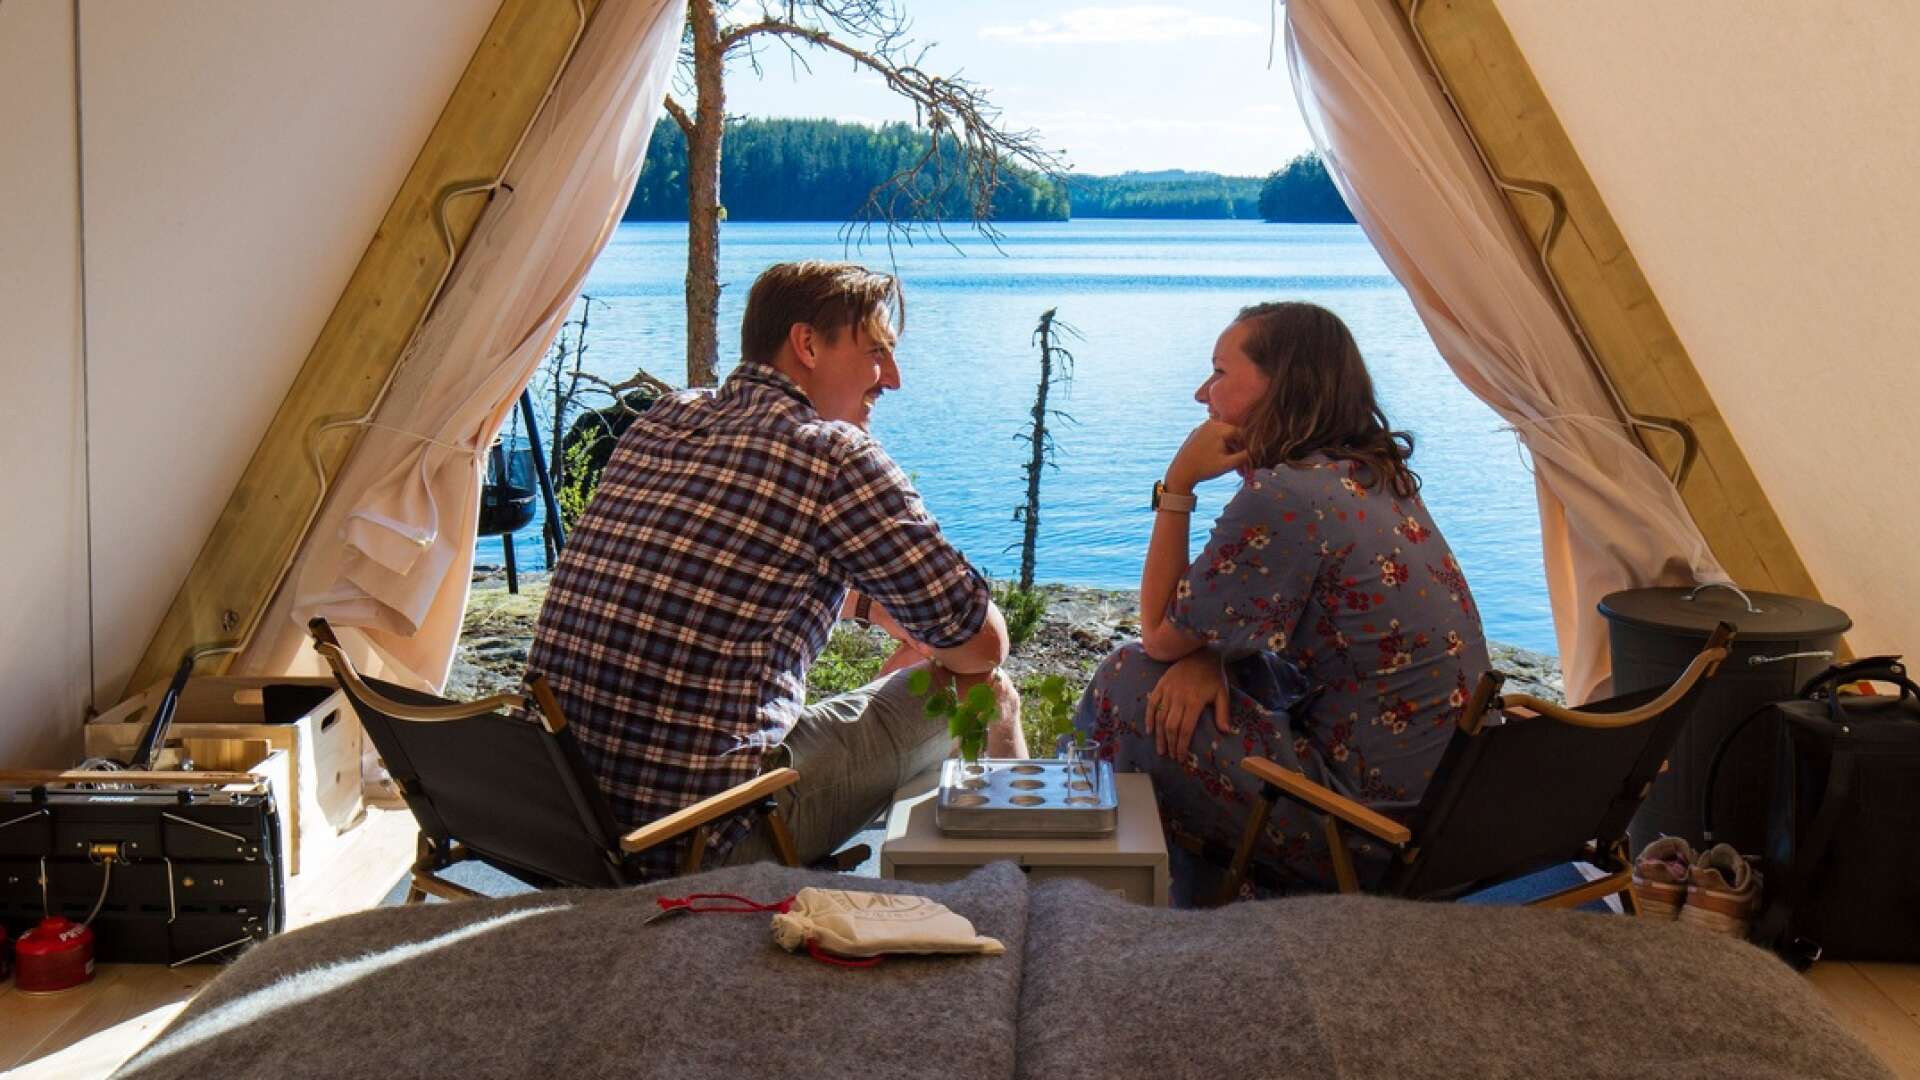 Happie camp erbjuder glamping, lyxig camping, i Värmland. 